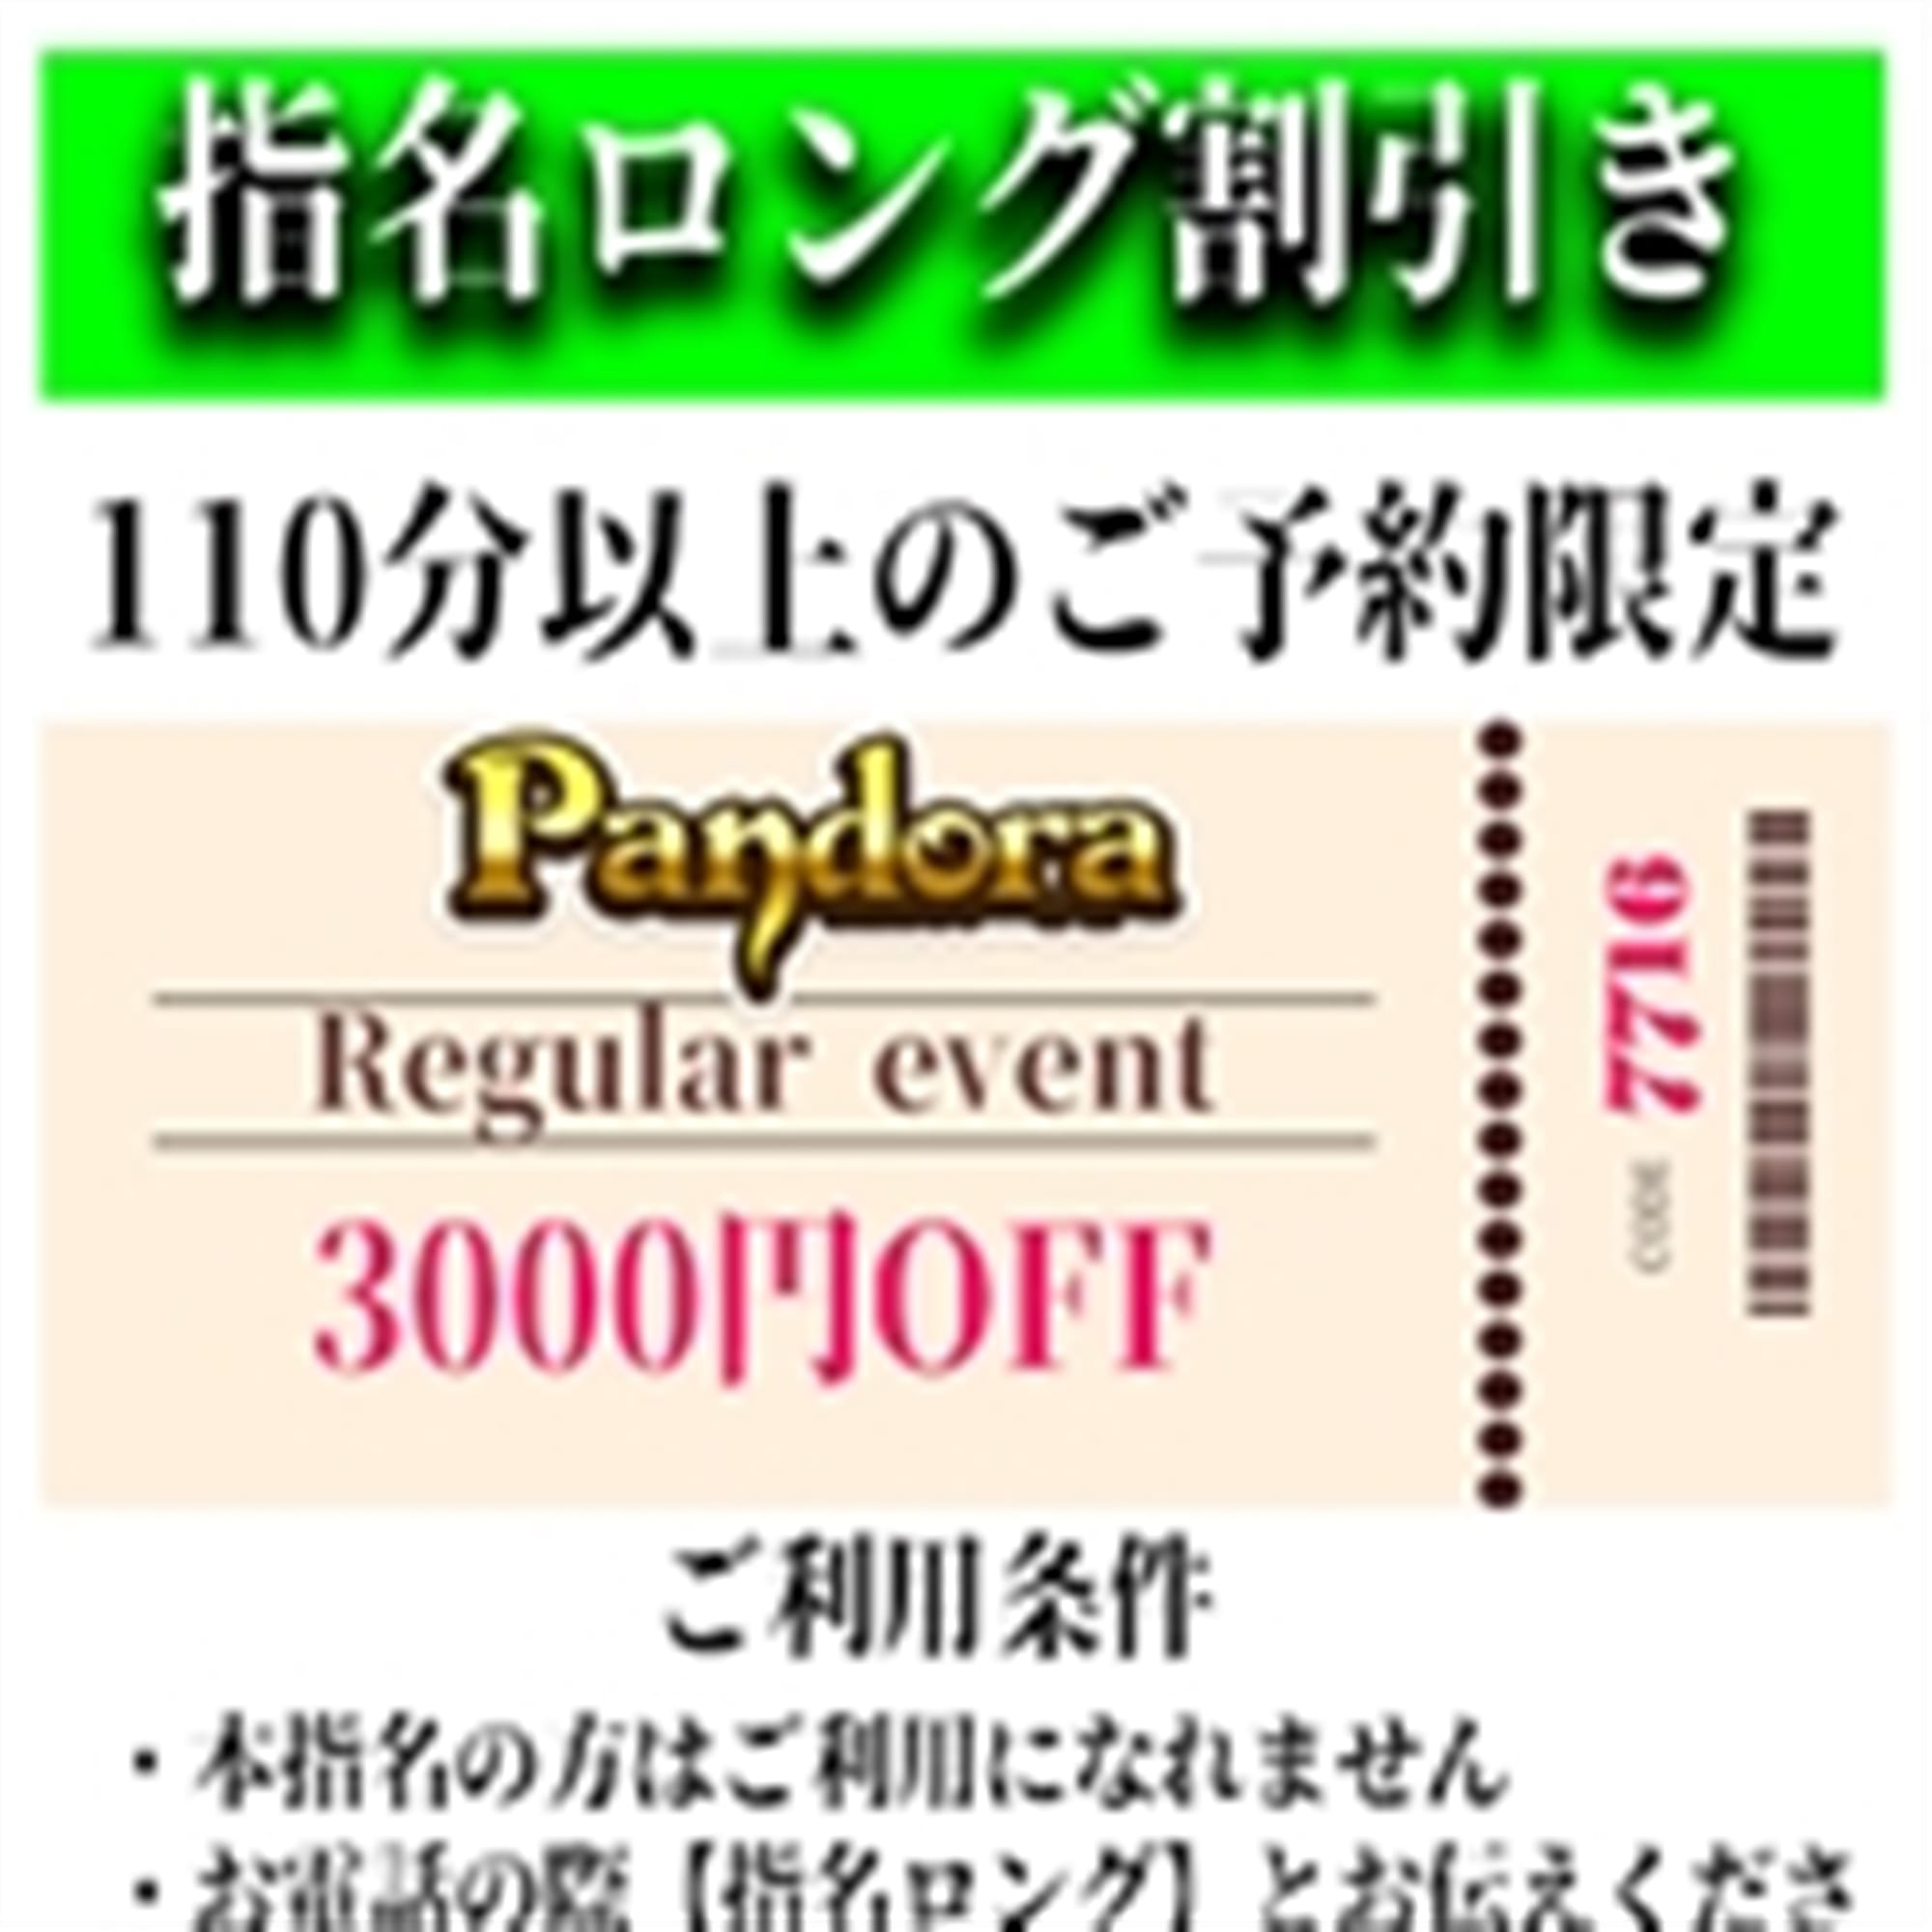 「ご指名のお客様も遊べるロングコース割引」04/24(水) 13:13 | Pandora(パンドラ)新潟のお得なニュース